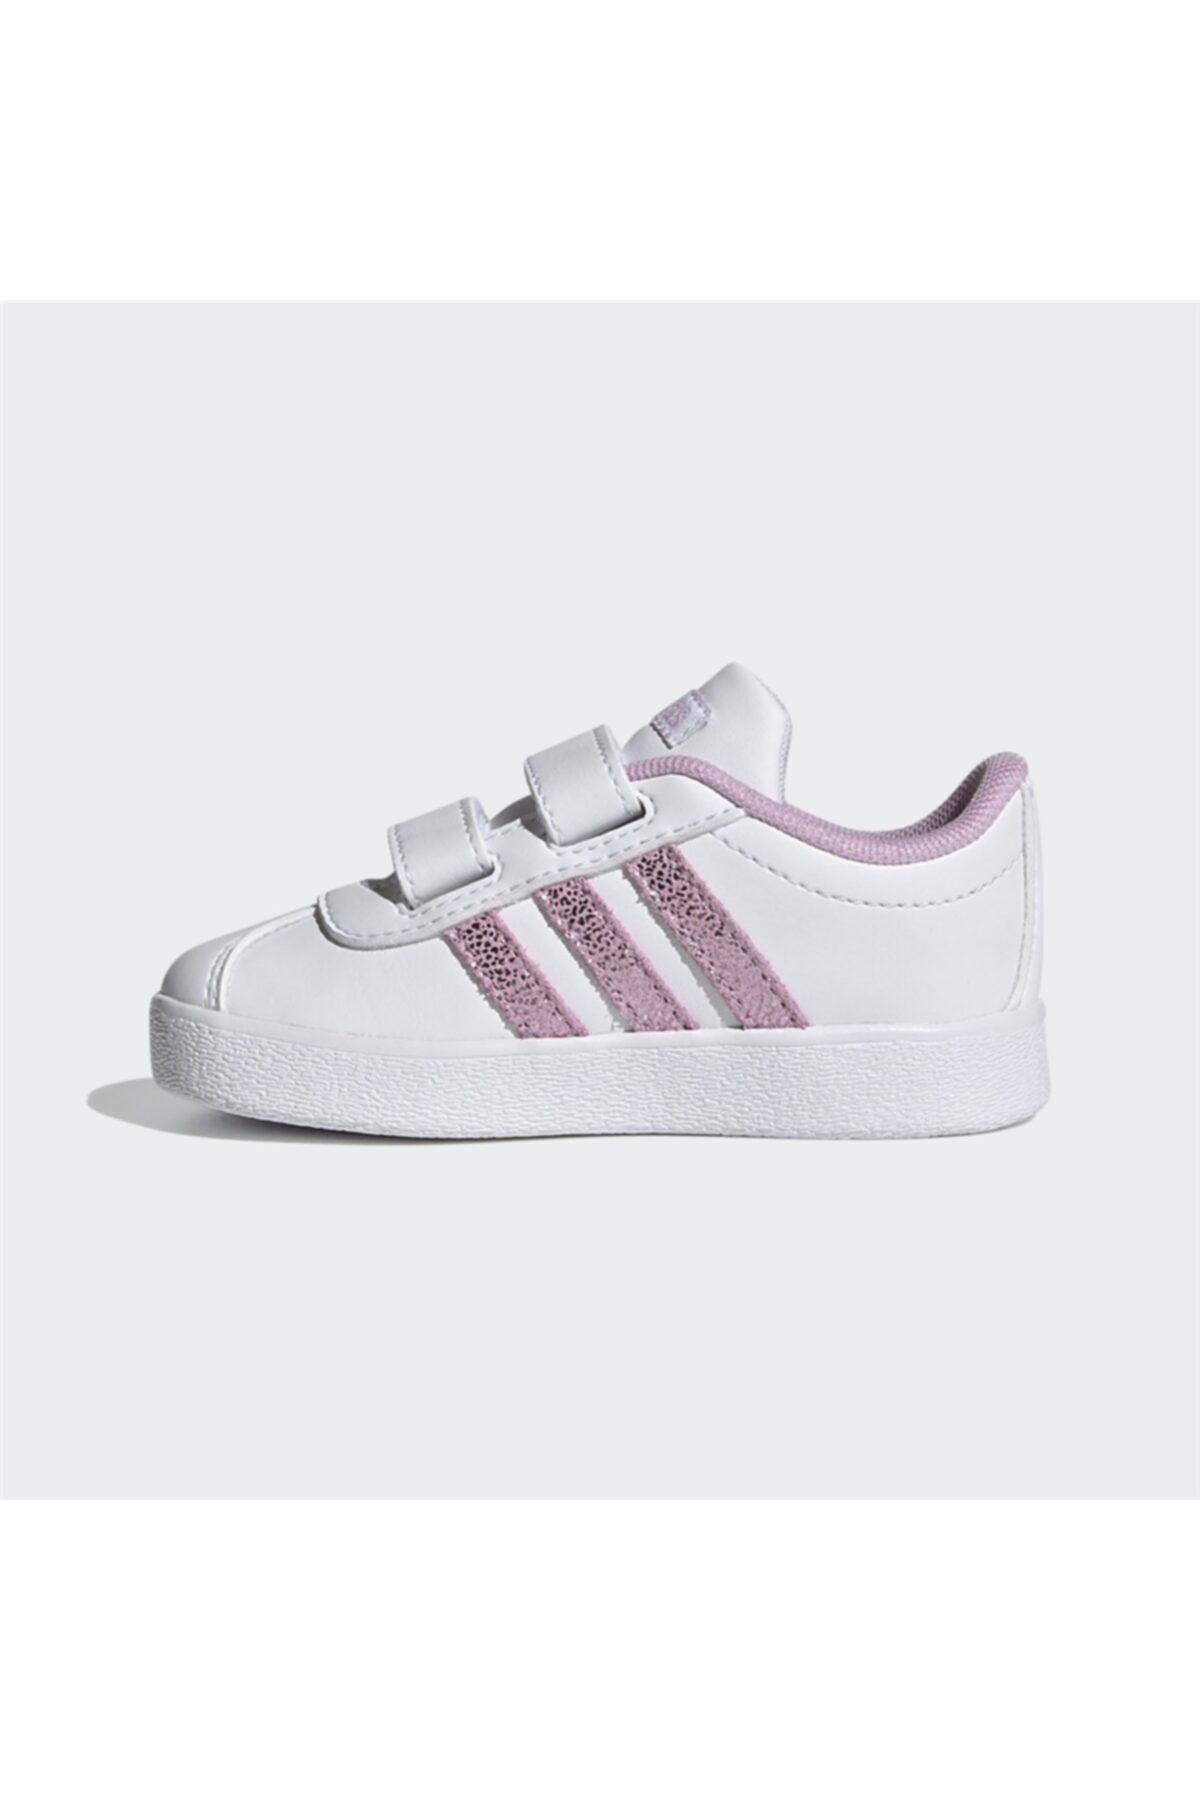 adidas VL COURT 2.0 CMF I Beyaz Kız Çocuk Sneaker Ayakkabı 101085042